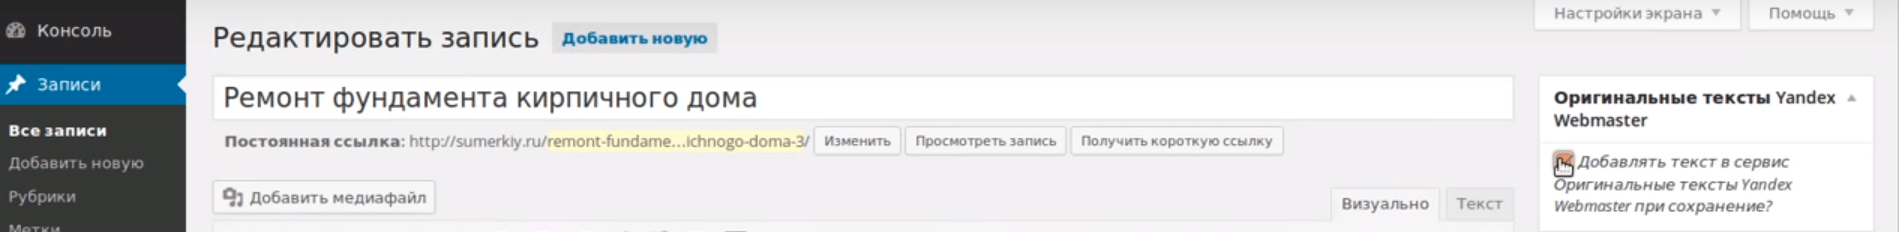 Установка плагина Original texts Yandex WebMaster Работа с плагином